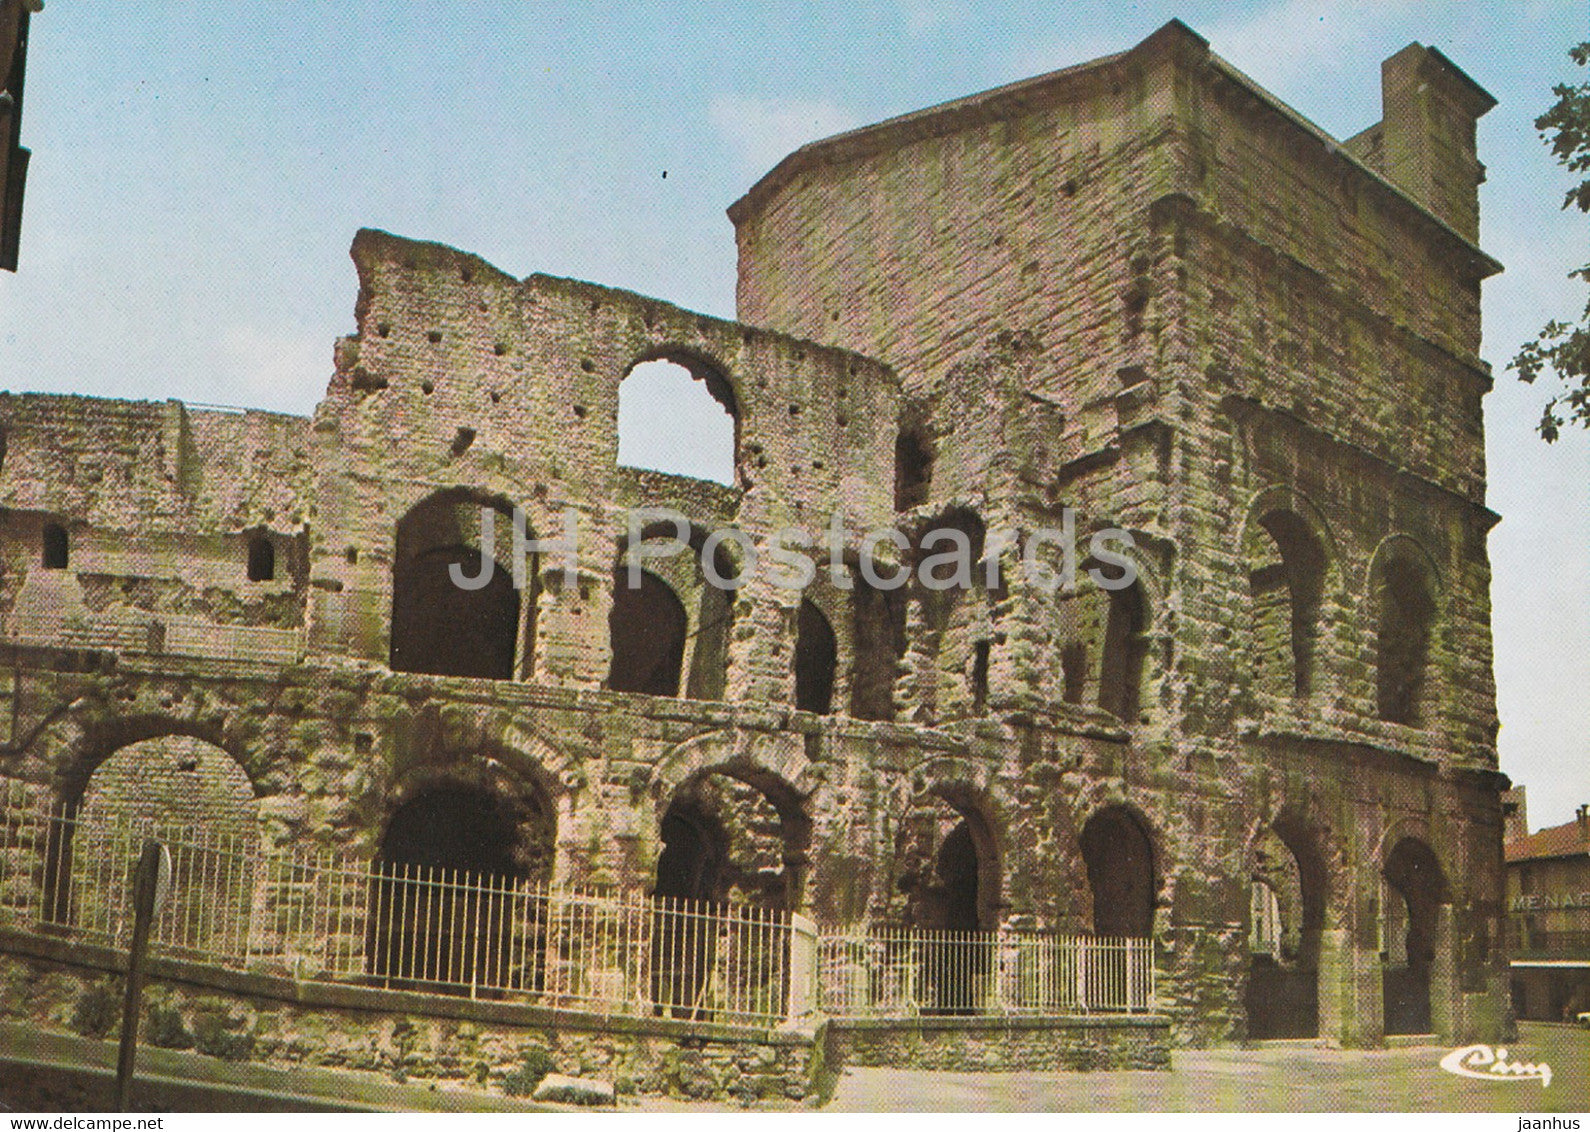 Orange - Le Theatre Antique - Ancient World - 84100 - France - unused - JH Postcards